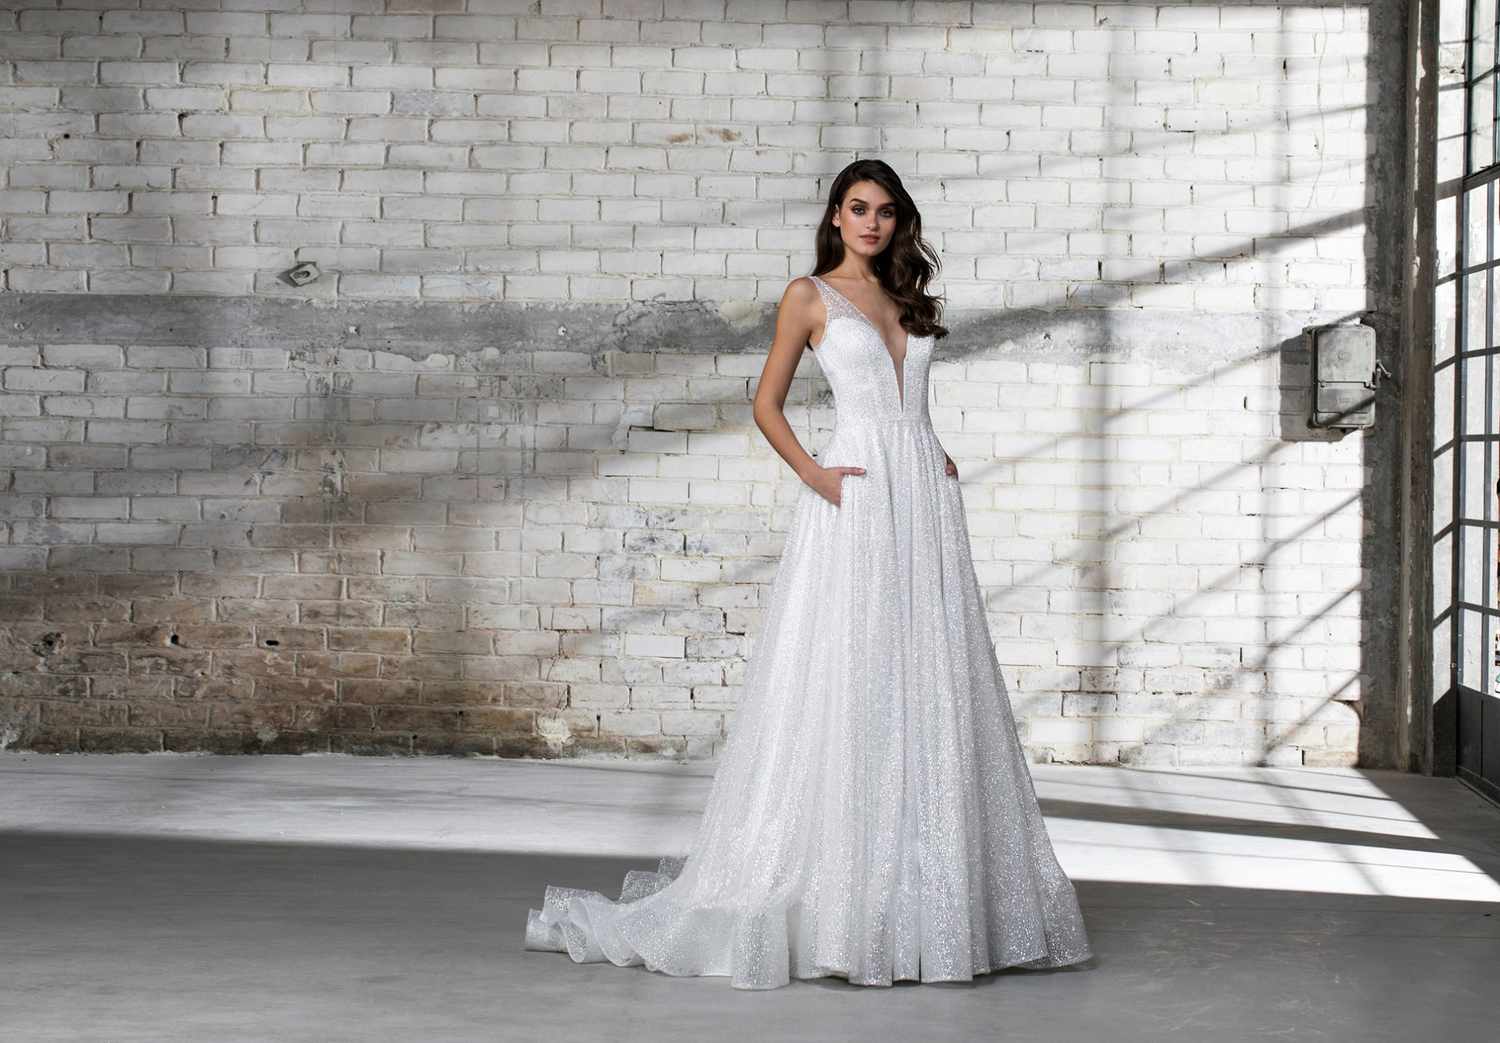 pnina tornai wedding dress spring 2019 sleeveless a-line sparkly